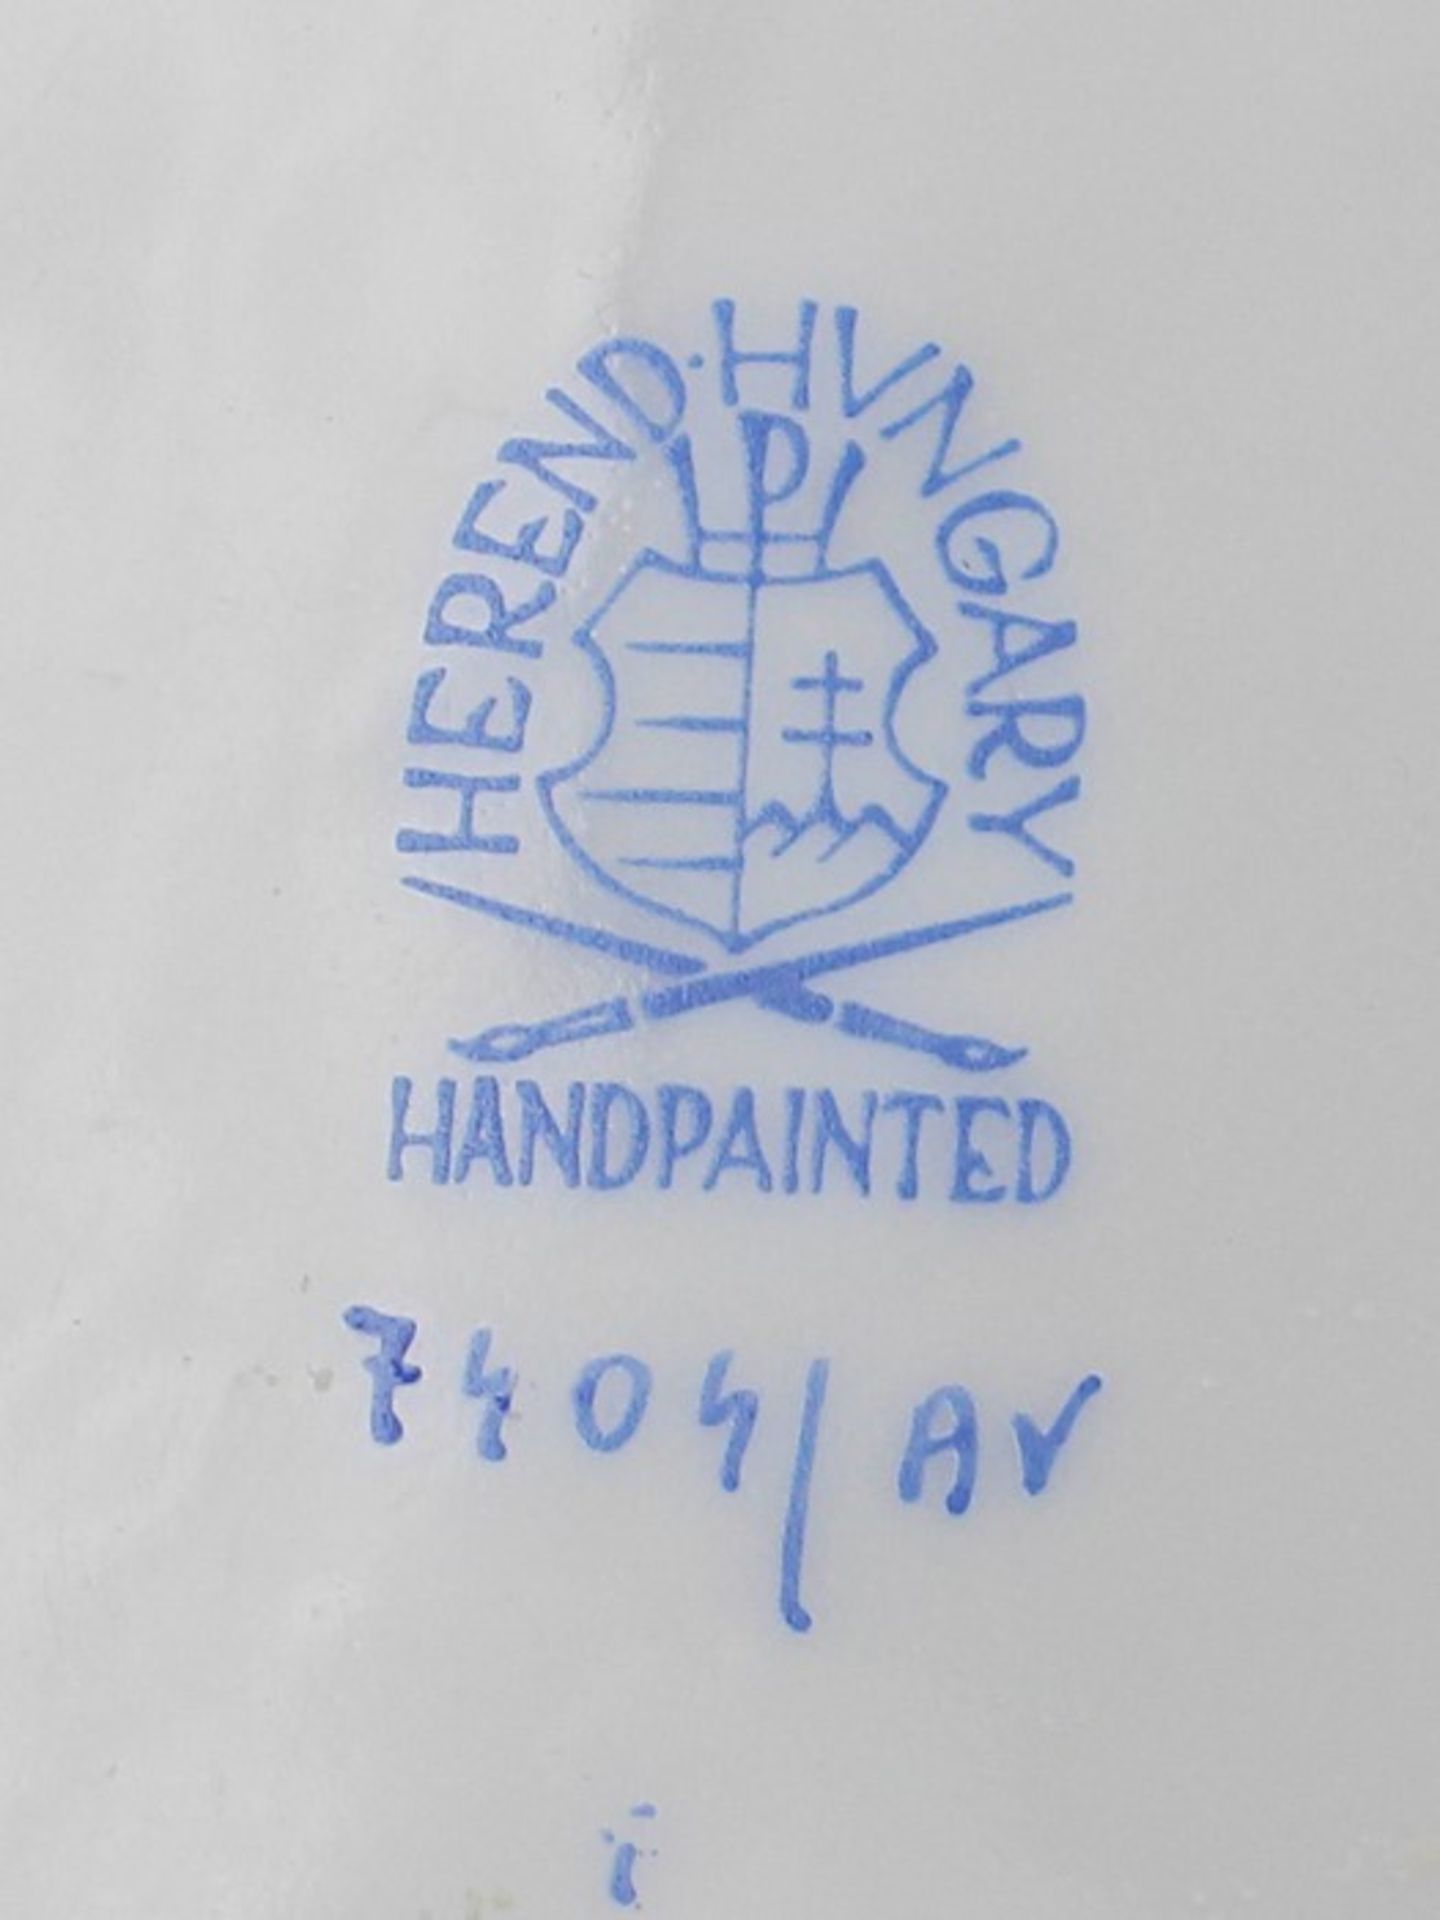 Herend - Zwei Teileblaue Stempelmarke, Dekor "Apponyi grün", runde Schale, durchbrochen gearbeiteter - Bild 4 aus 4